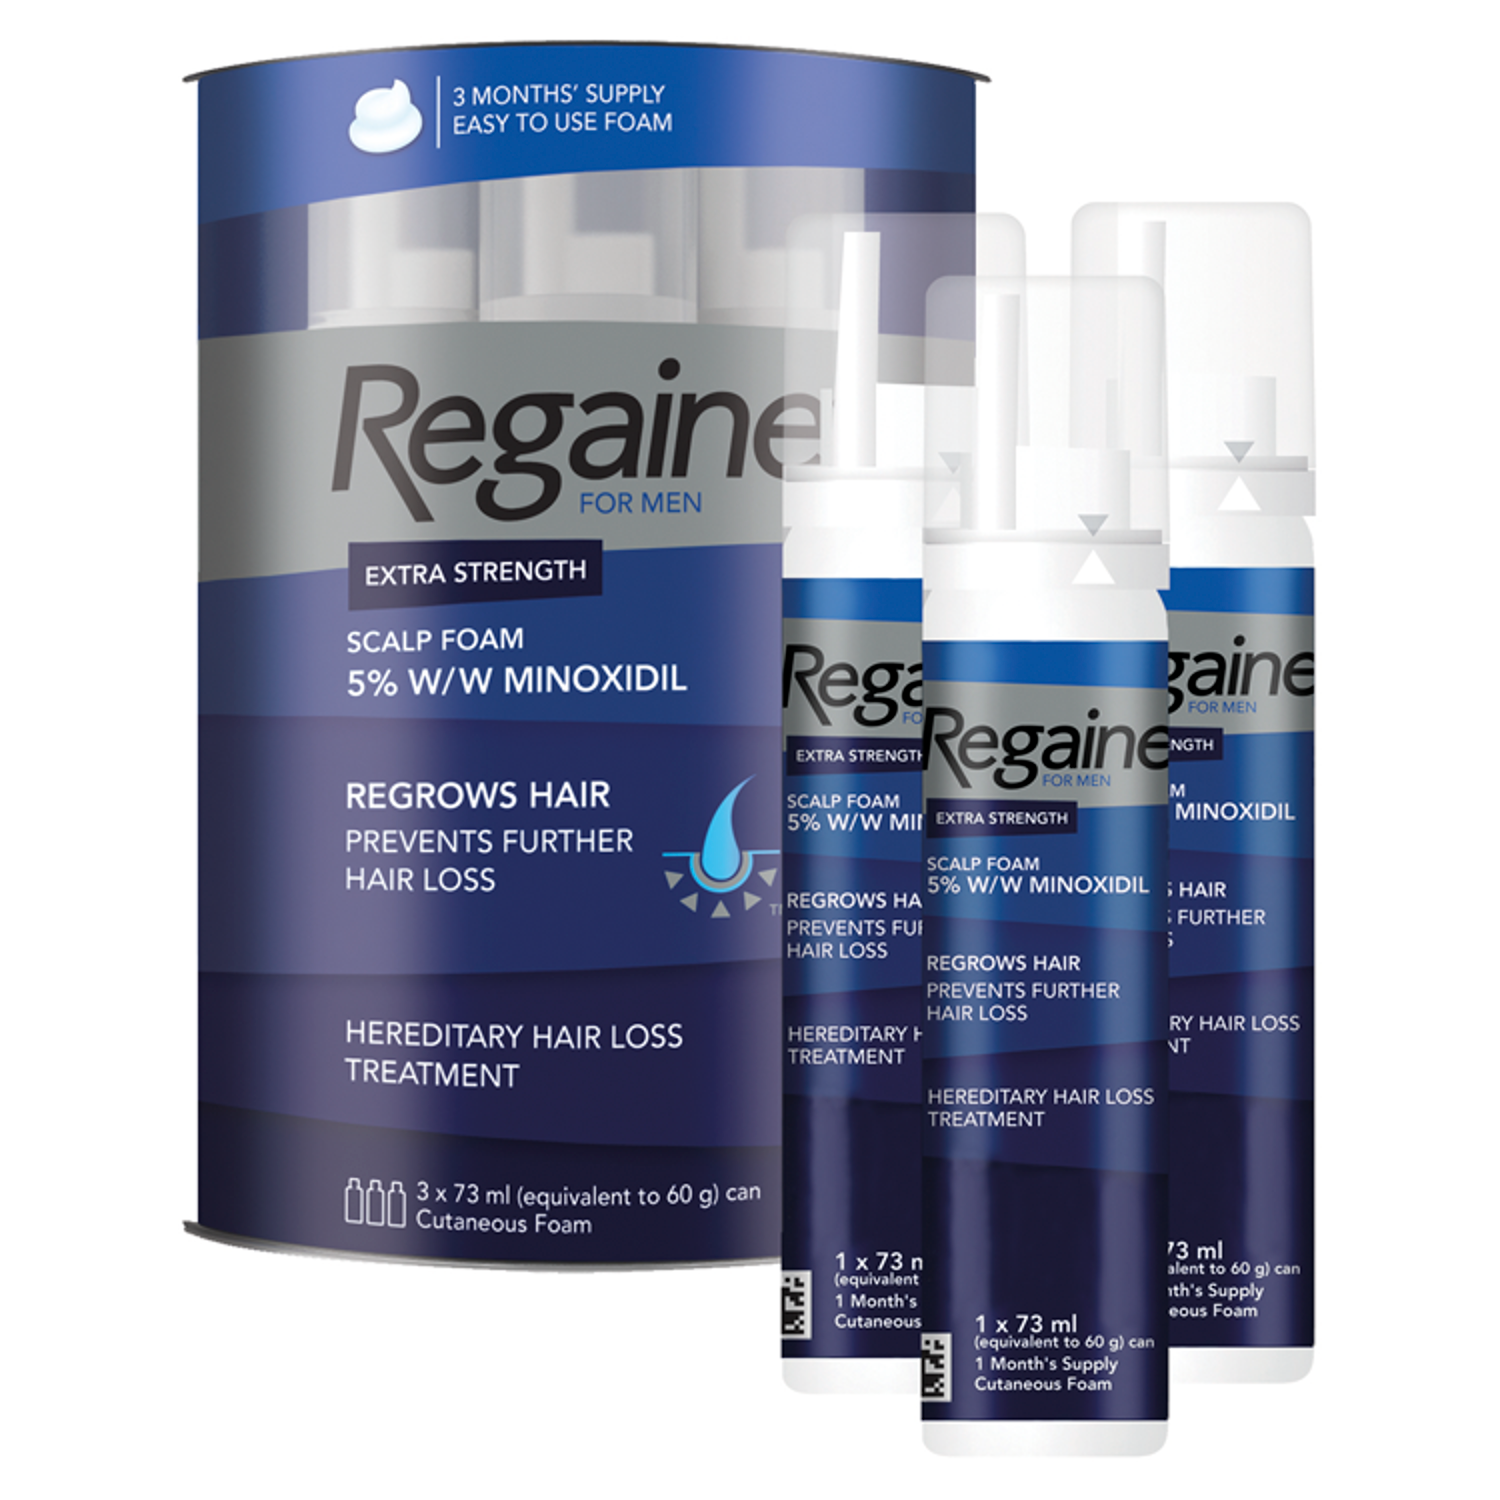 Regaine® for Men Extra Strength Scalp Foam 5% w/w Minoxidil (3 x 73ml)